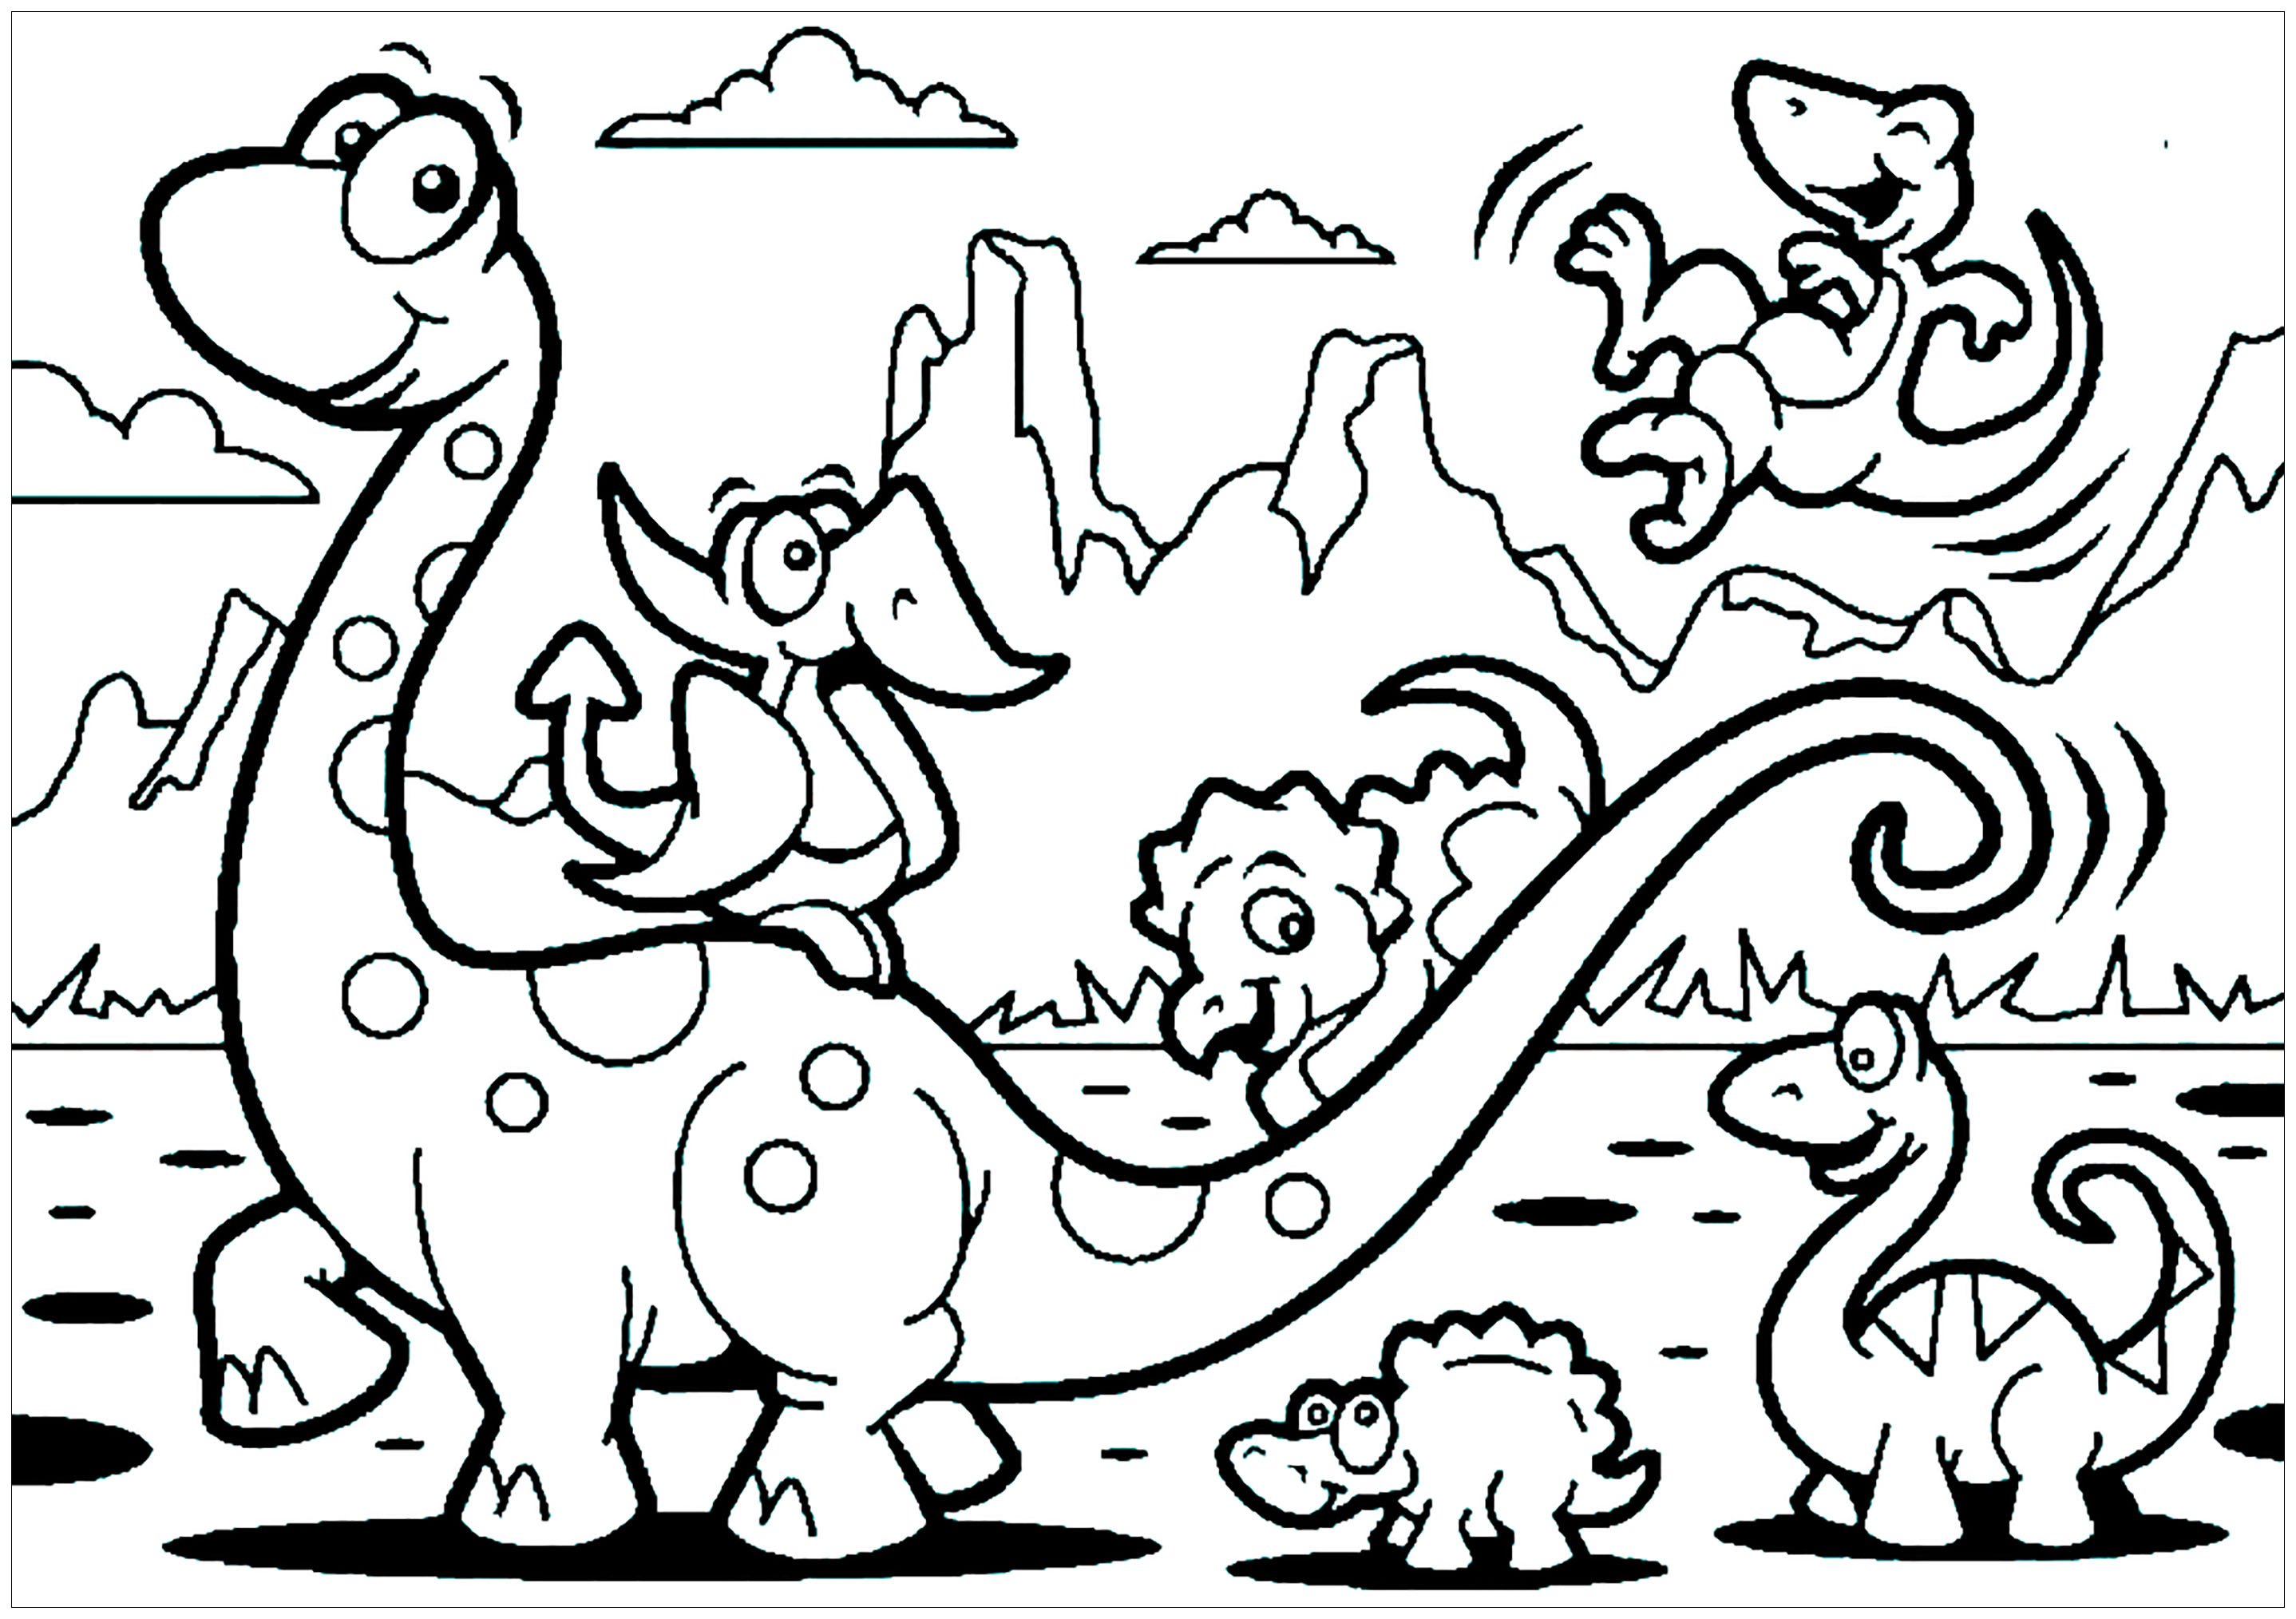 Динозавры для раскрашивания. Динозавры / раскраска. Раскраски для мальчиков динозавры. Раскраска "Динозаврики". Динозавр раскраска для детей.